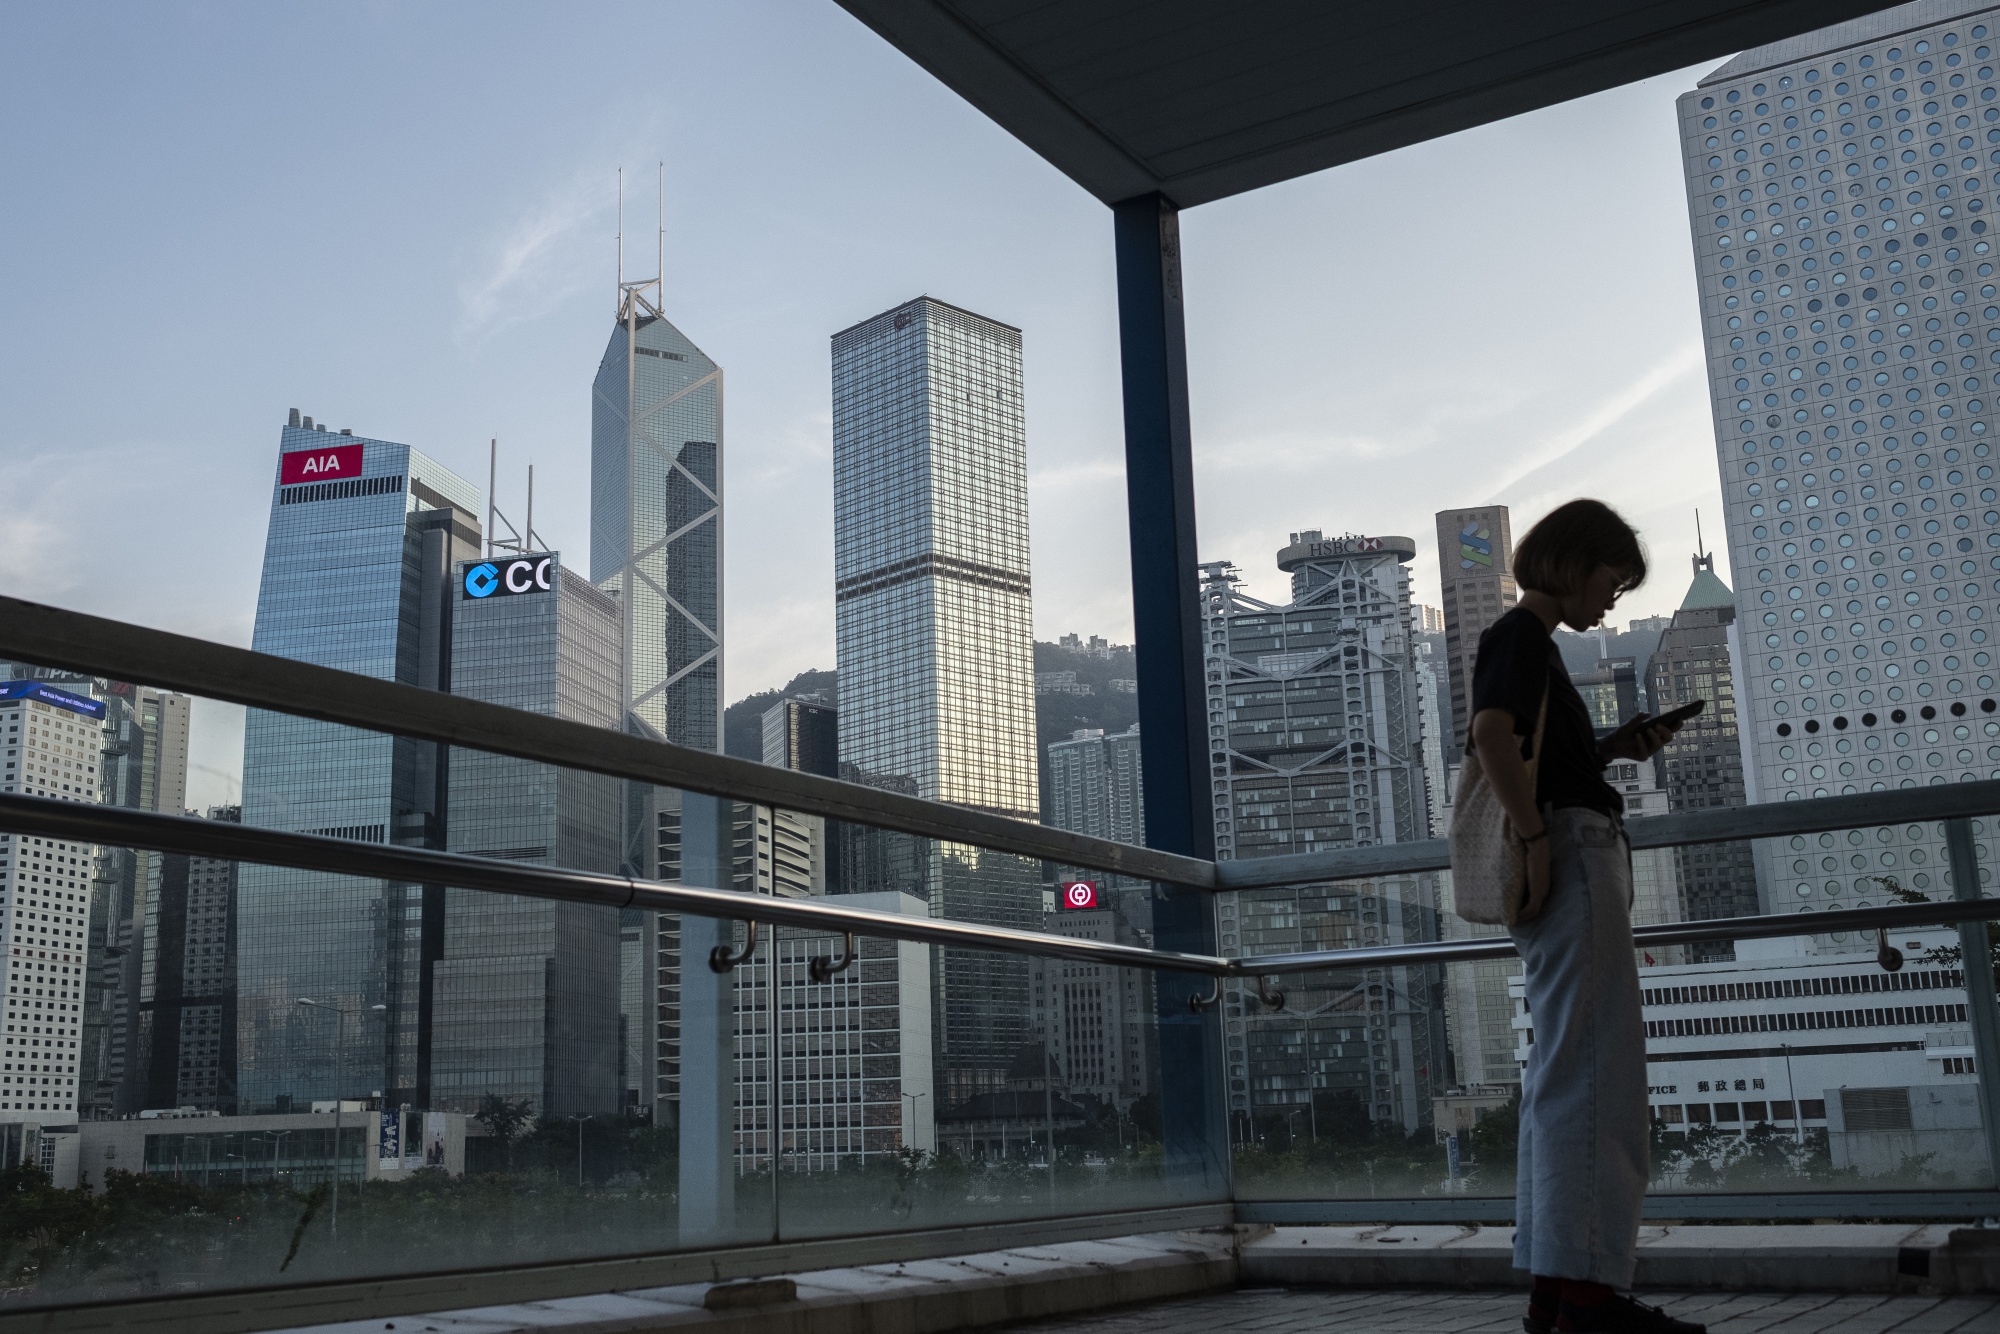 Hong Kong Virtual Bank With 6.8% Deposits Cools Price War Talk